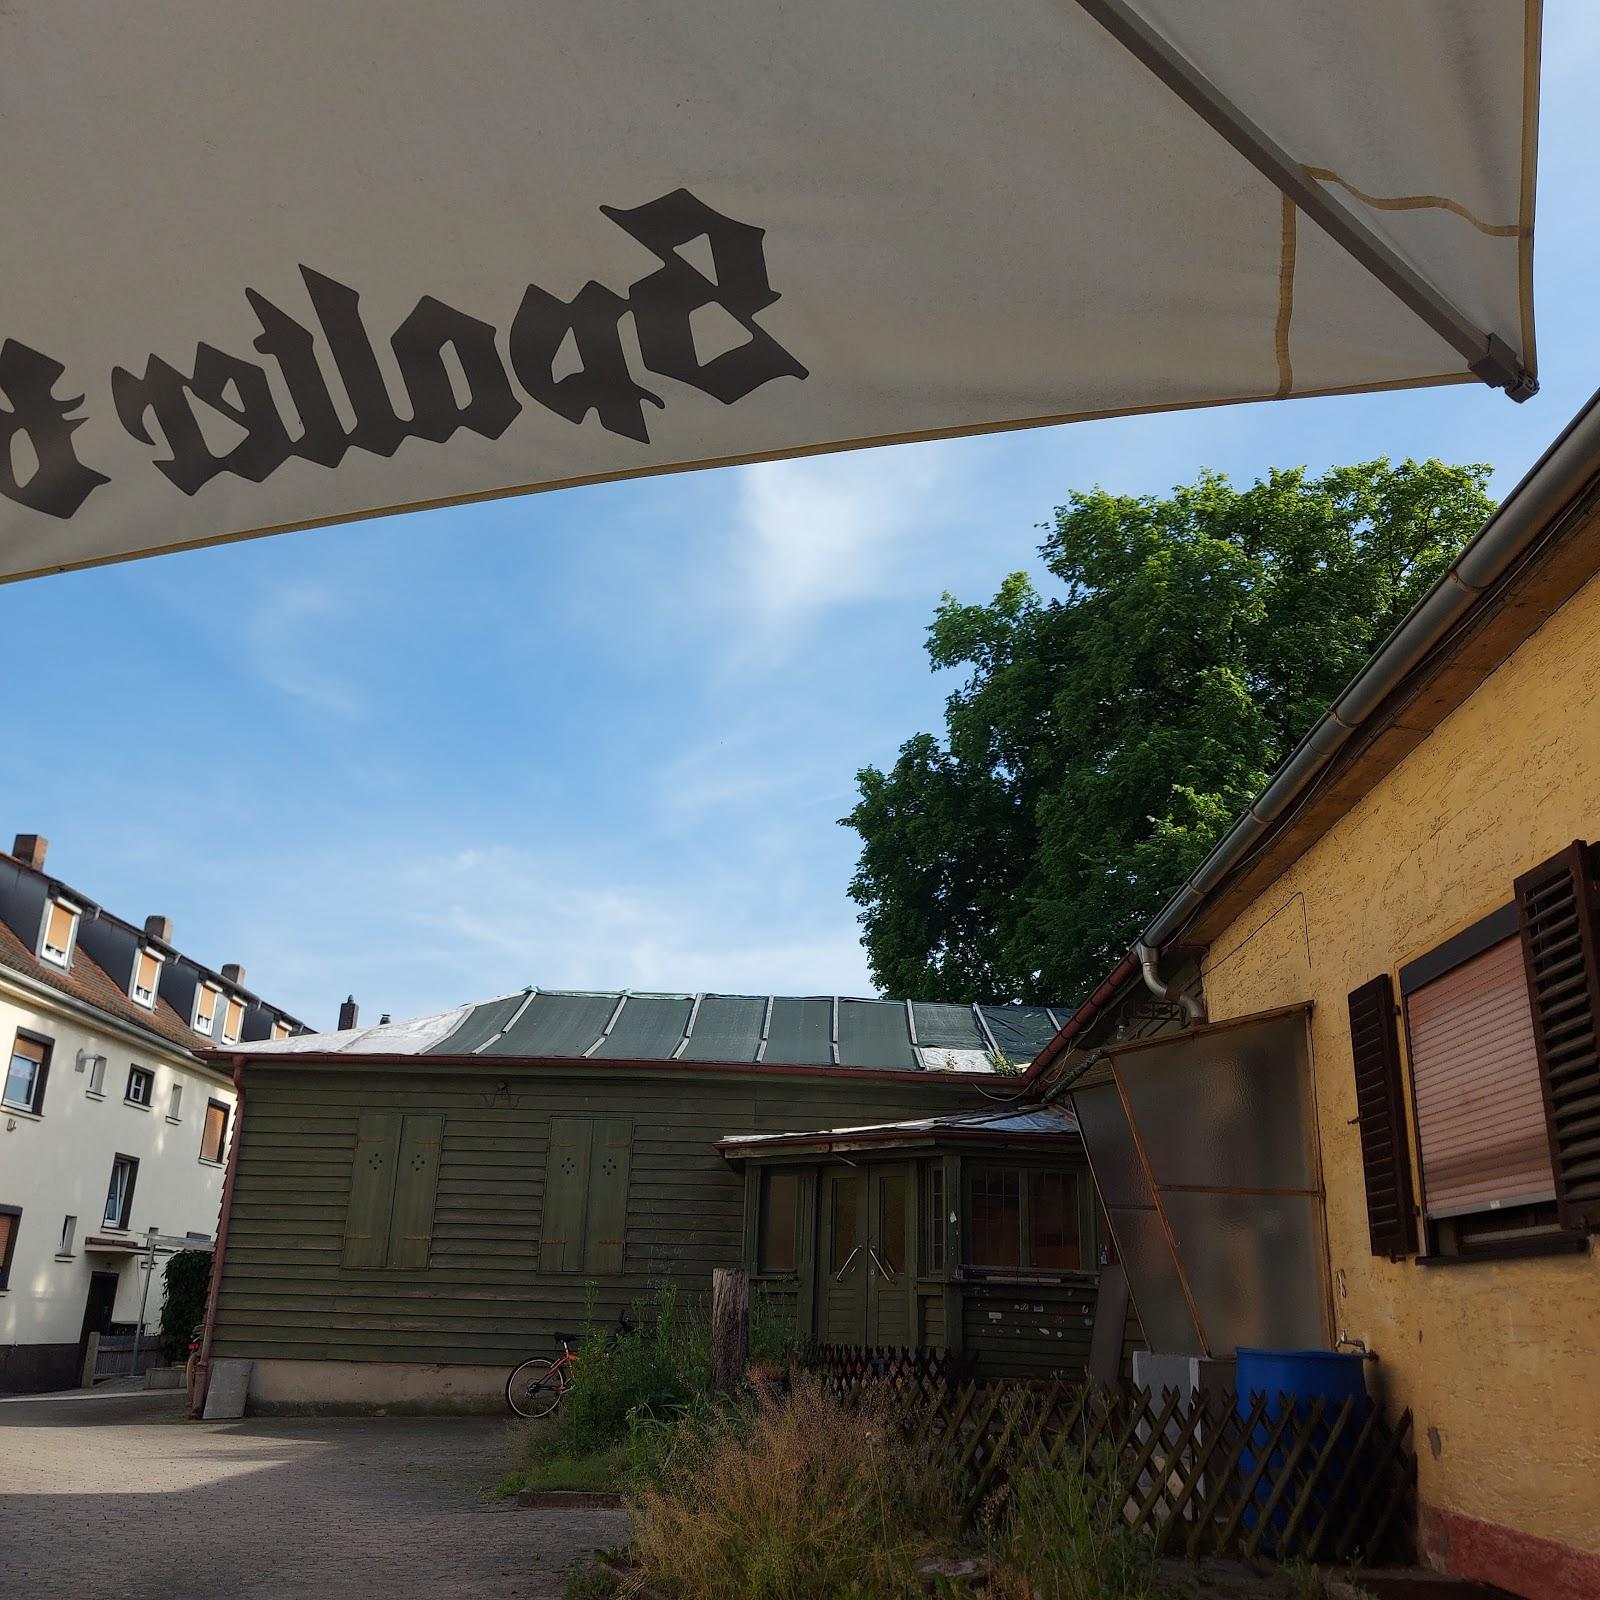 Restaurant "Moses kleine Kneipe" in Schwabach